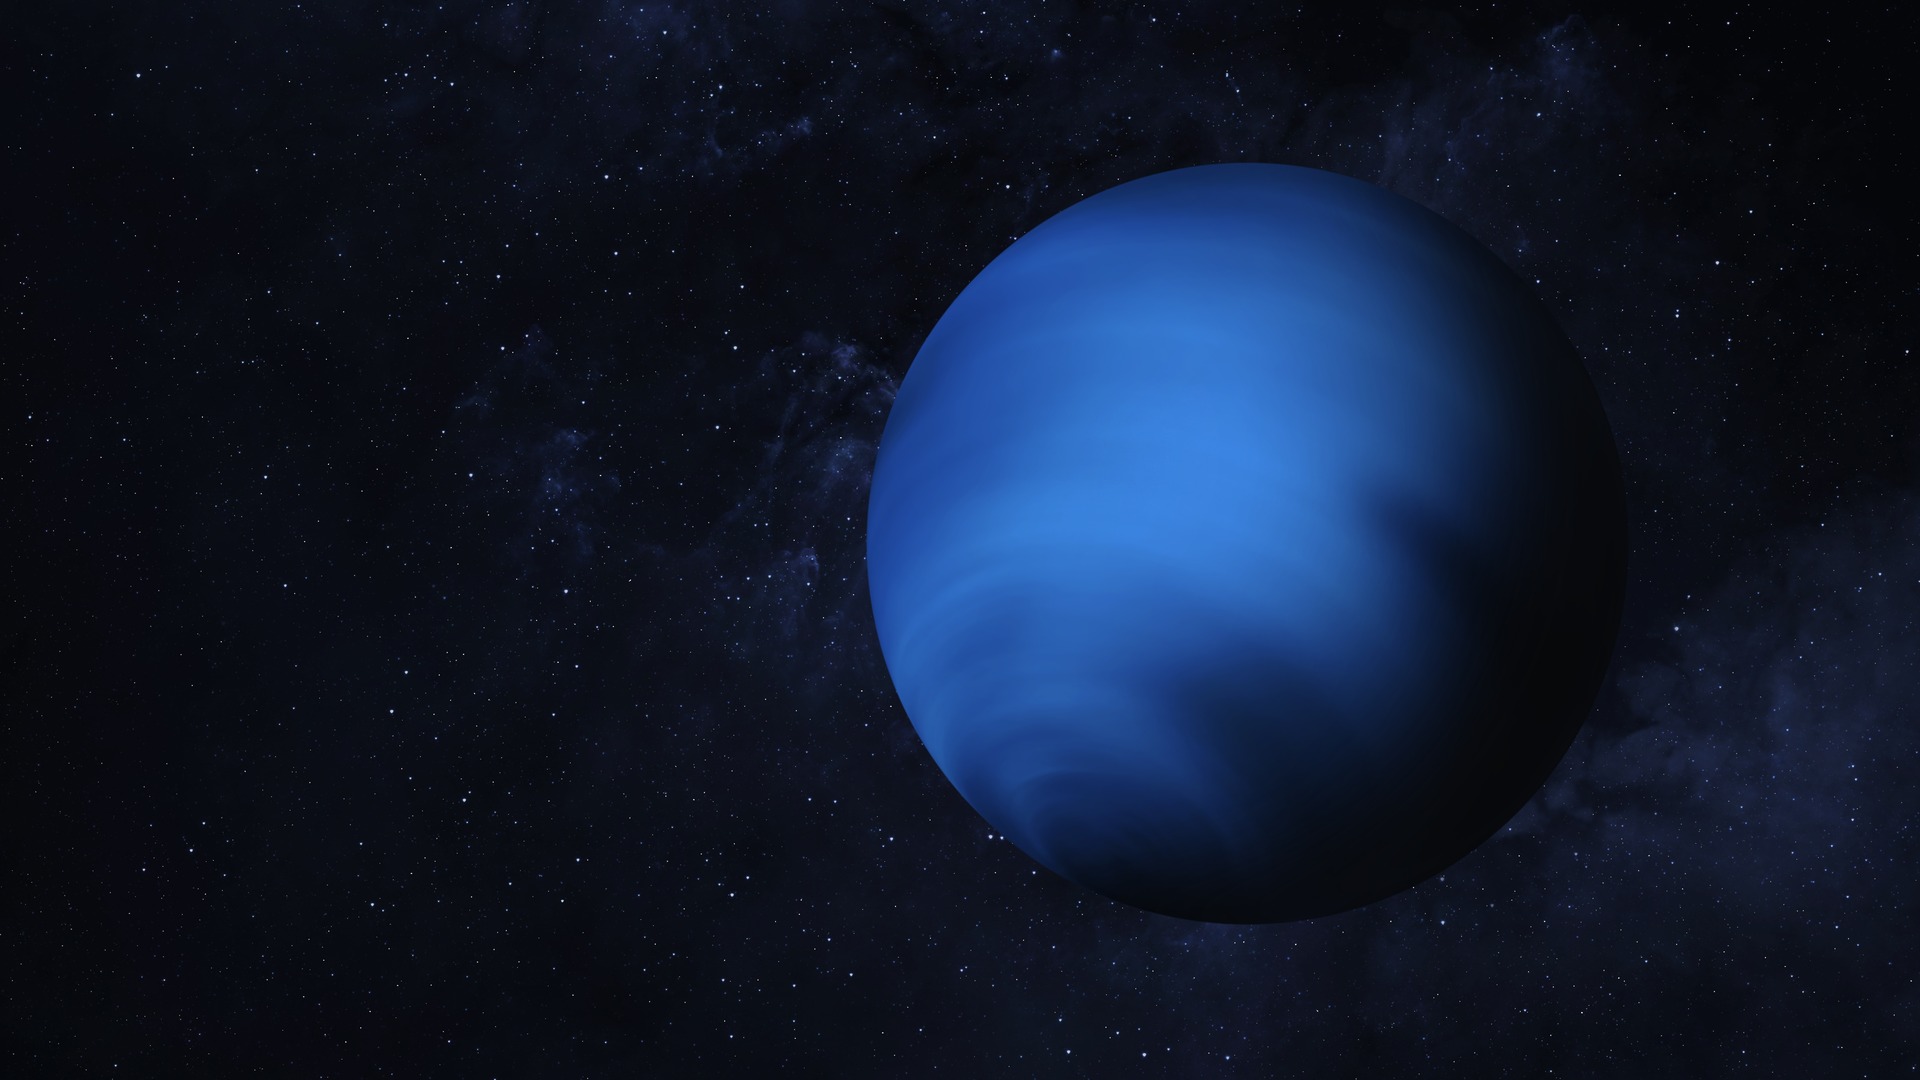 Hello There! 3 New Moons Found Orbiting Uranus And Neptune